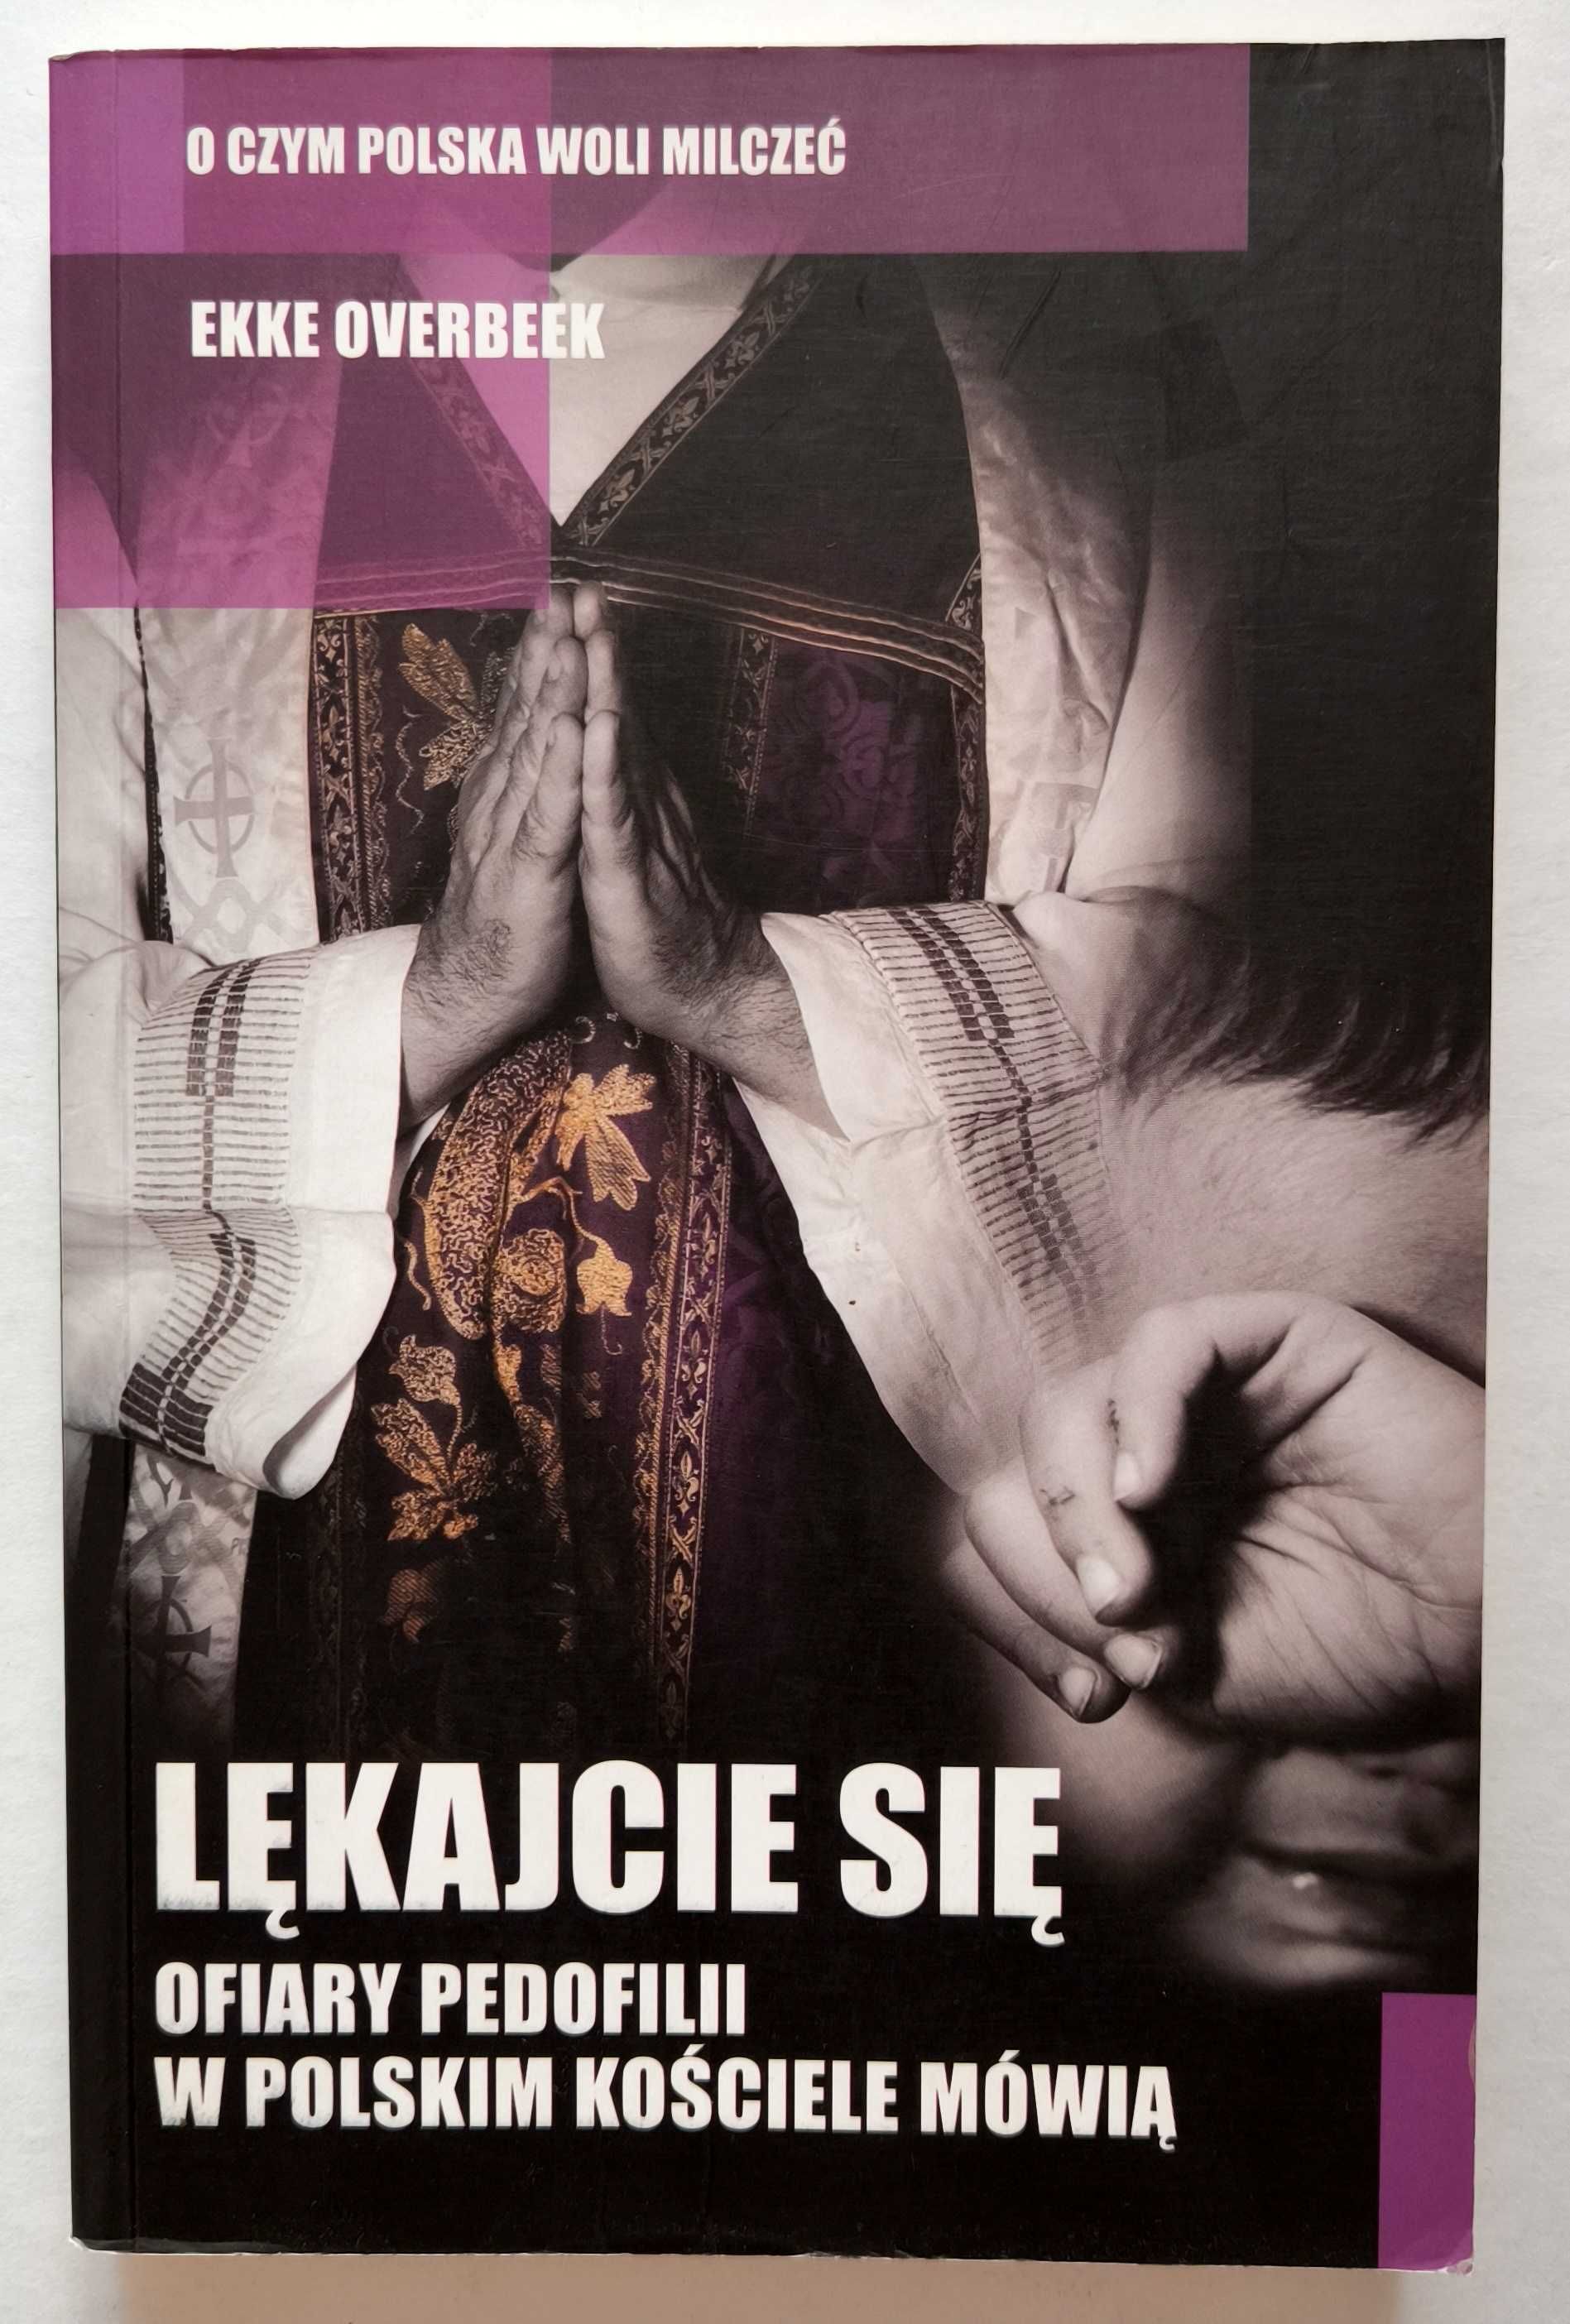 LĘKAJCIE SIĘ. Ofiary pedofilii w polskim kościele mówią, Overbeek, HIT